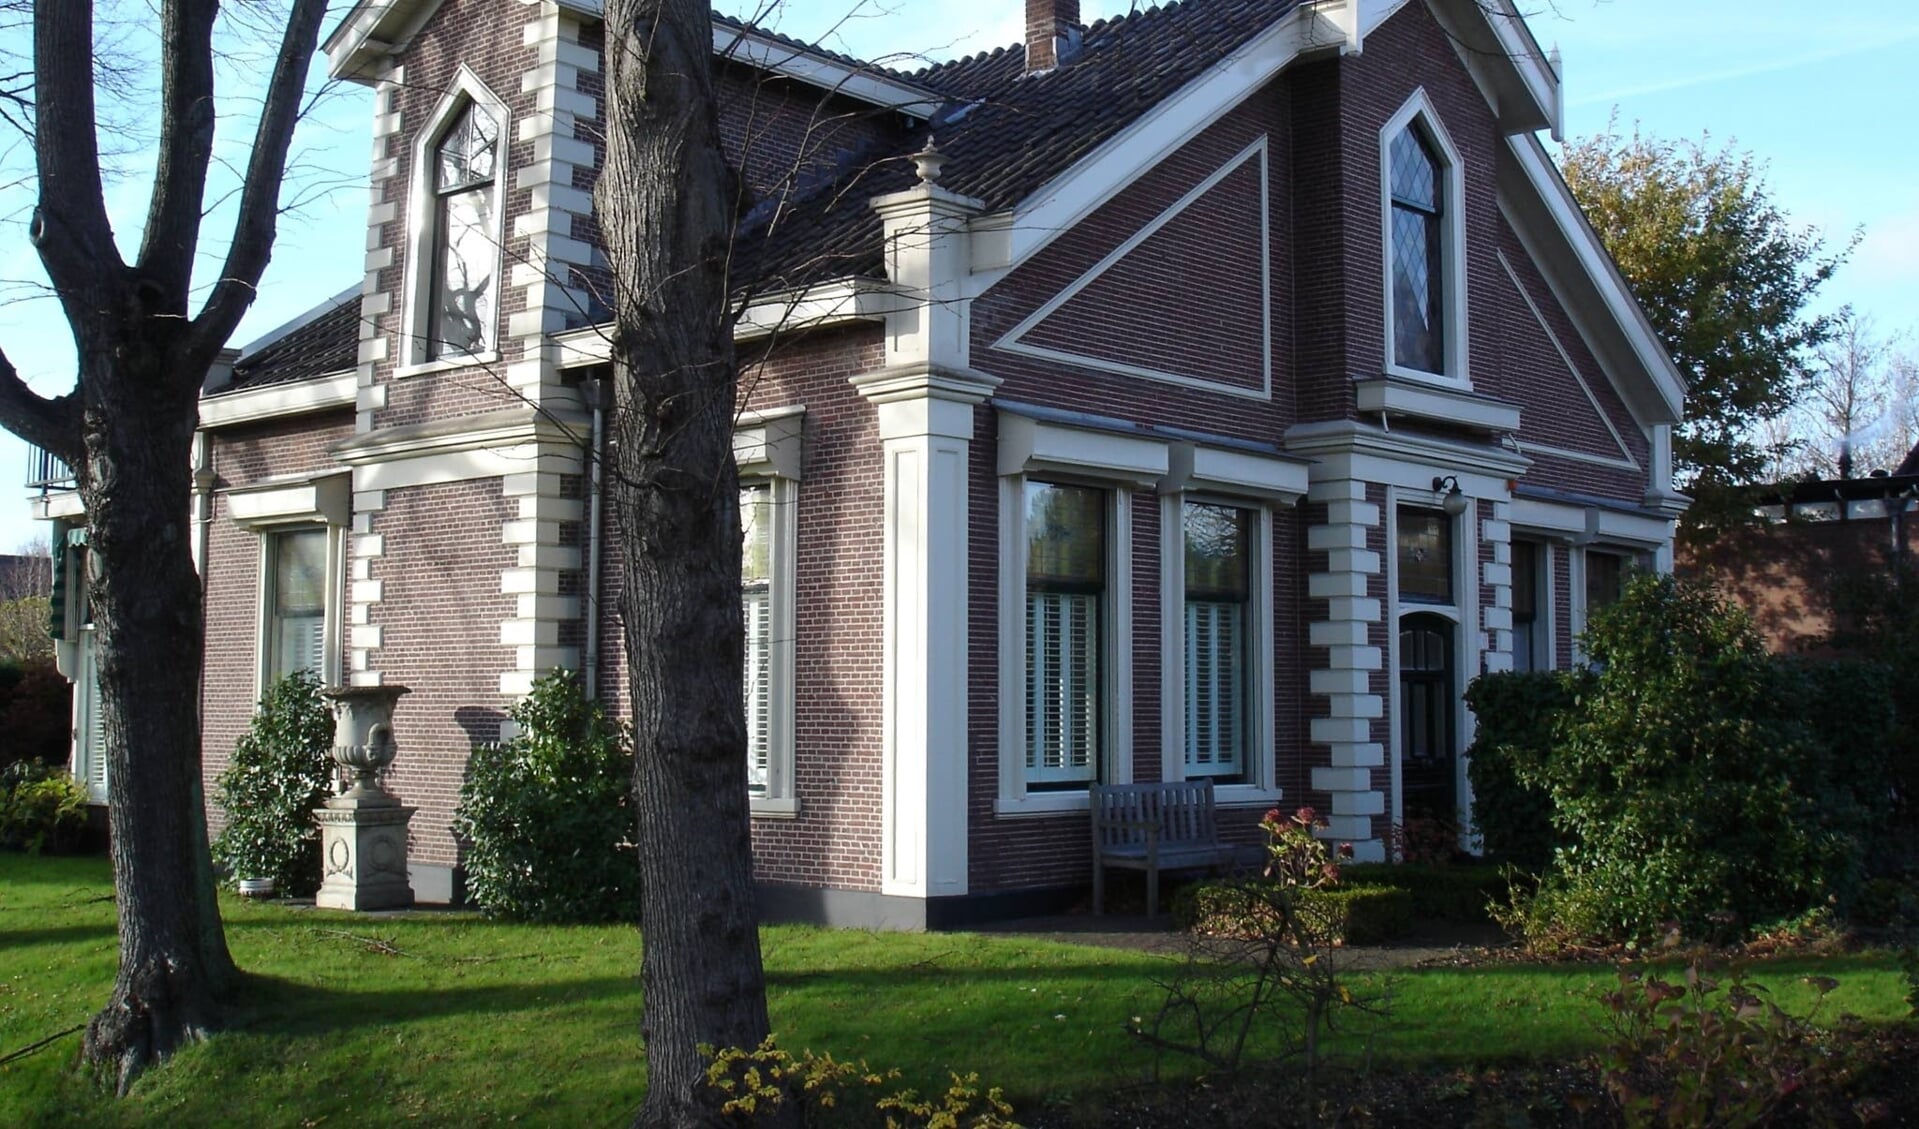 De fraai gedecoreerde woning aan het Zuideinde 32 werd zeer waarschijnlijk gebouwd door meester metselaar Johannes Roozenboom.